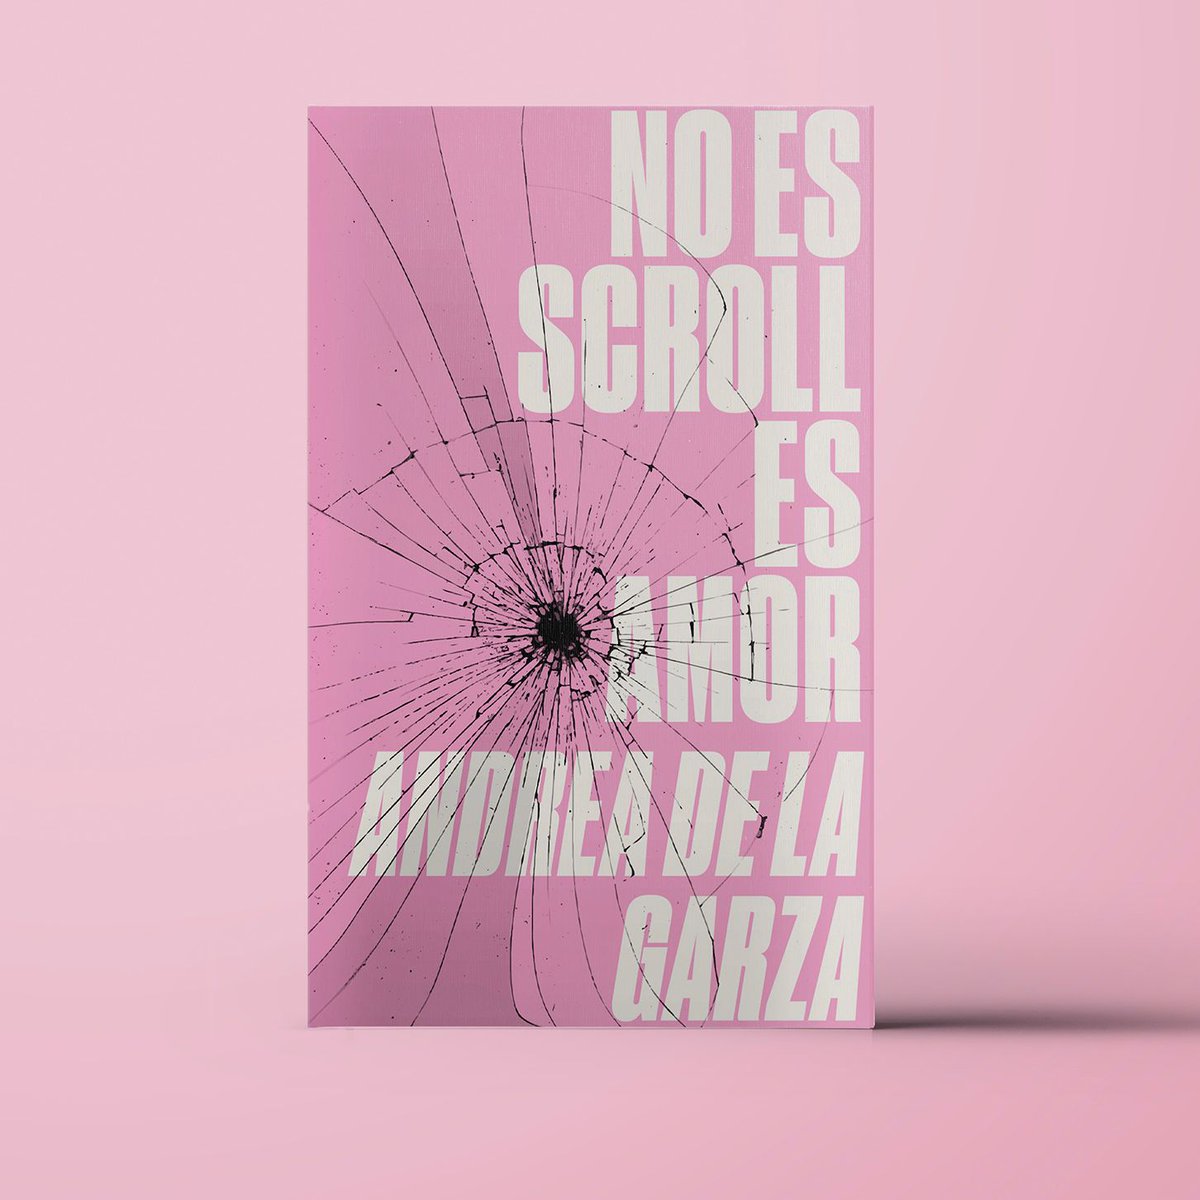 Ya viene. Ya casi. 'No es scroll es amor', de Andrea de la Garza, es nuestro próximo título, que en breve estará donde sea necesario. Y más. Felices por ello.